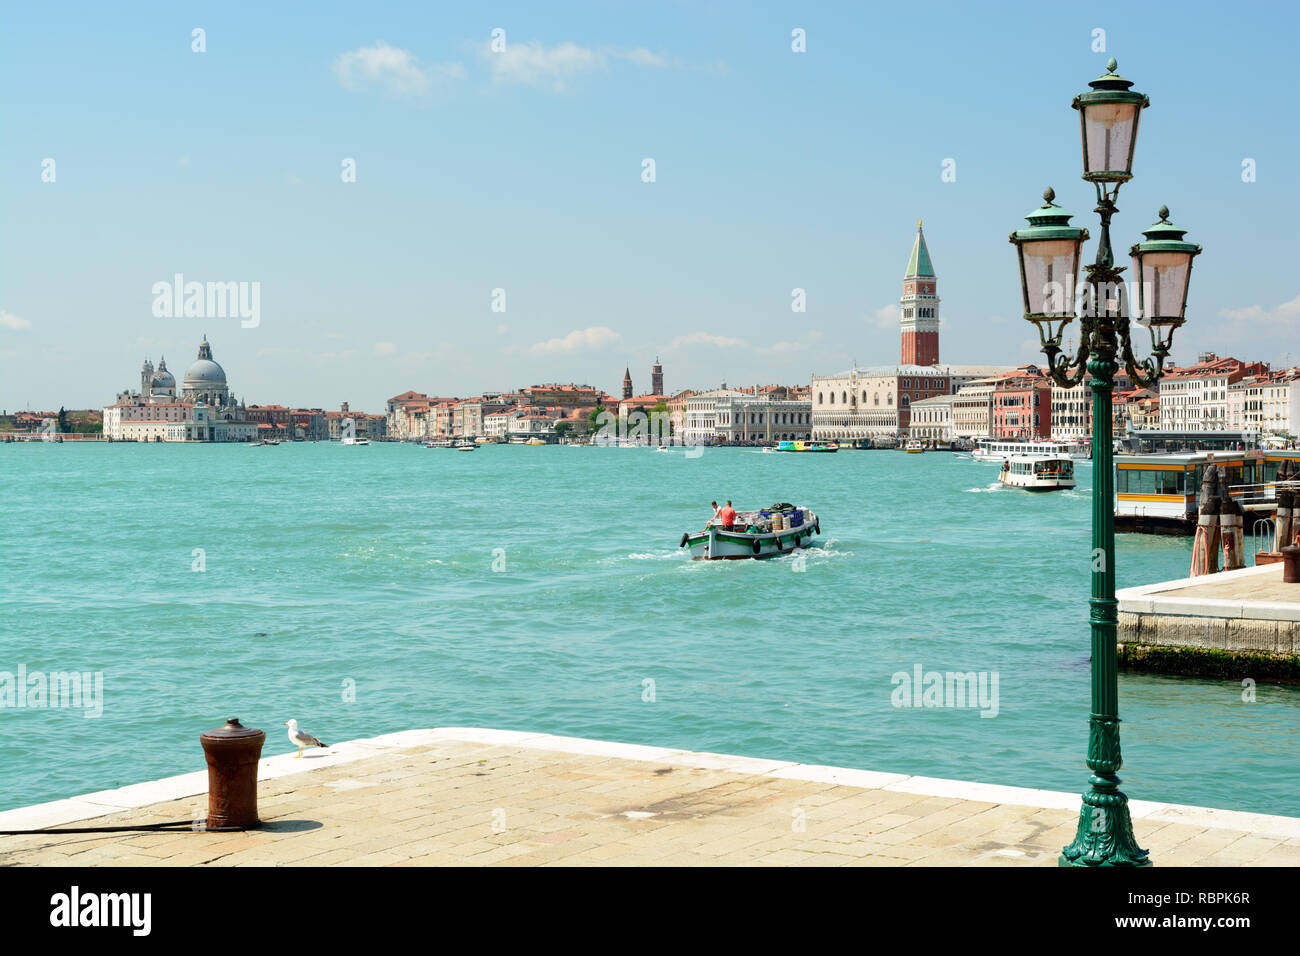 La Laguna de Venecia y Venecia vista del horizonte en día soleado, Italia Foto de stock